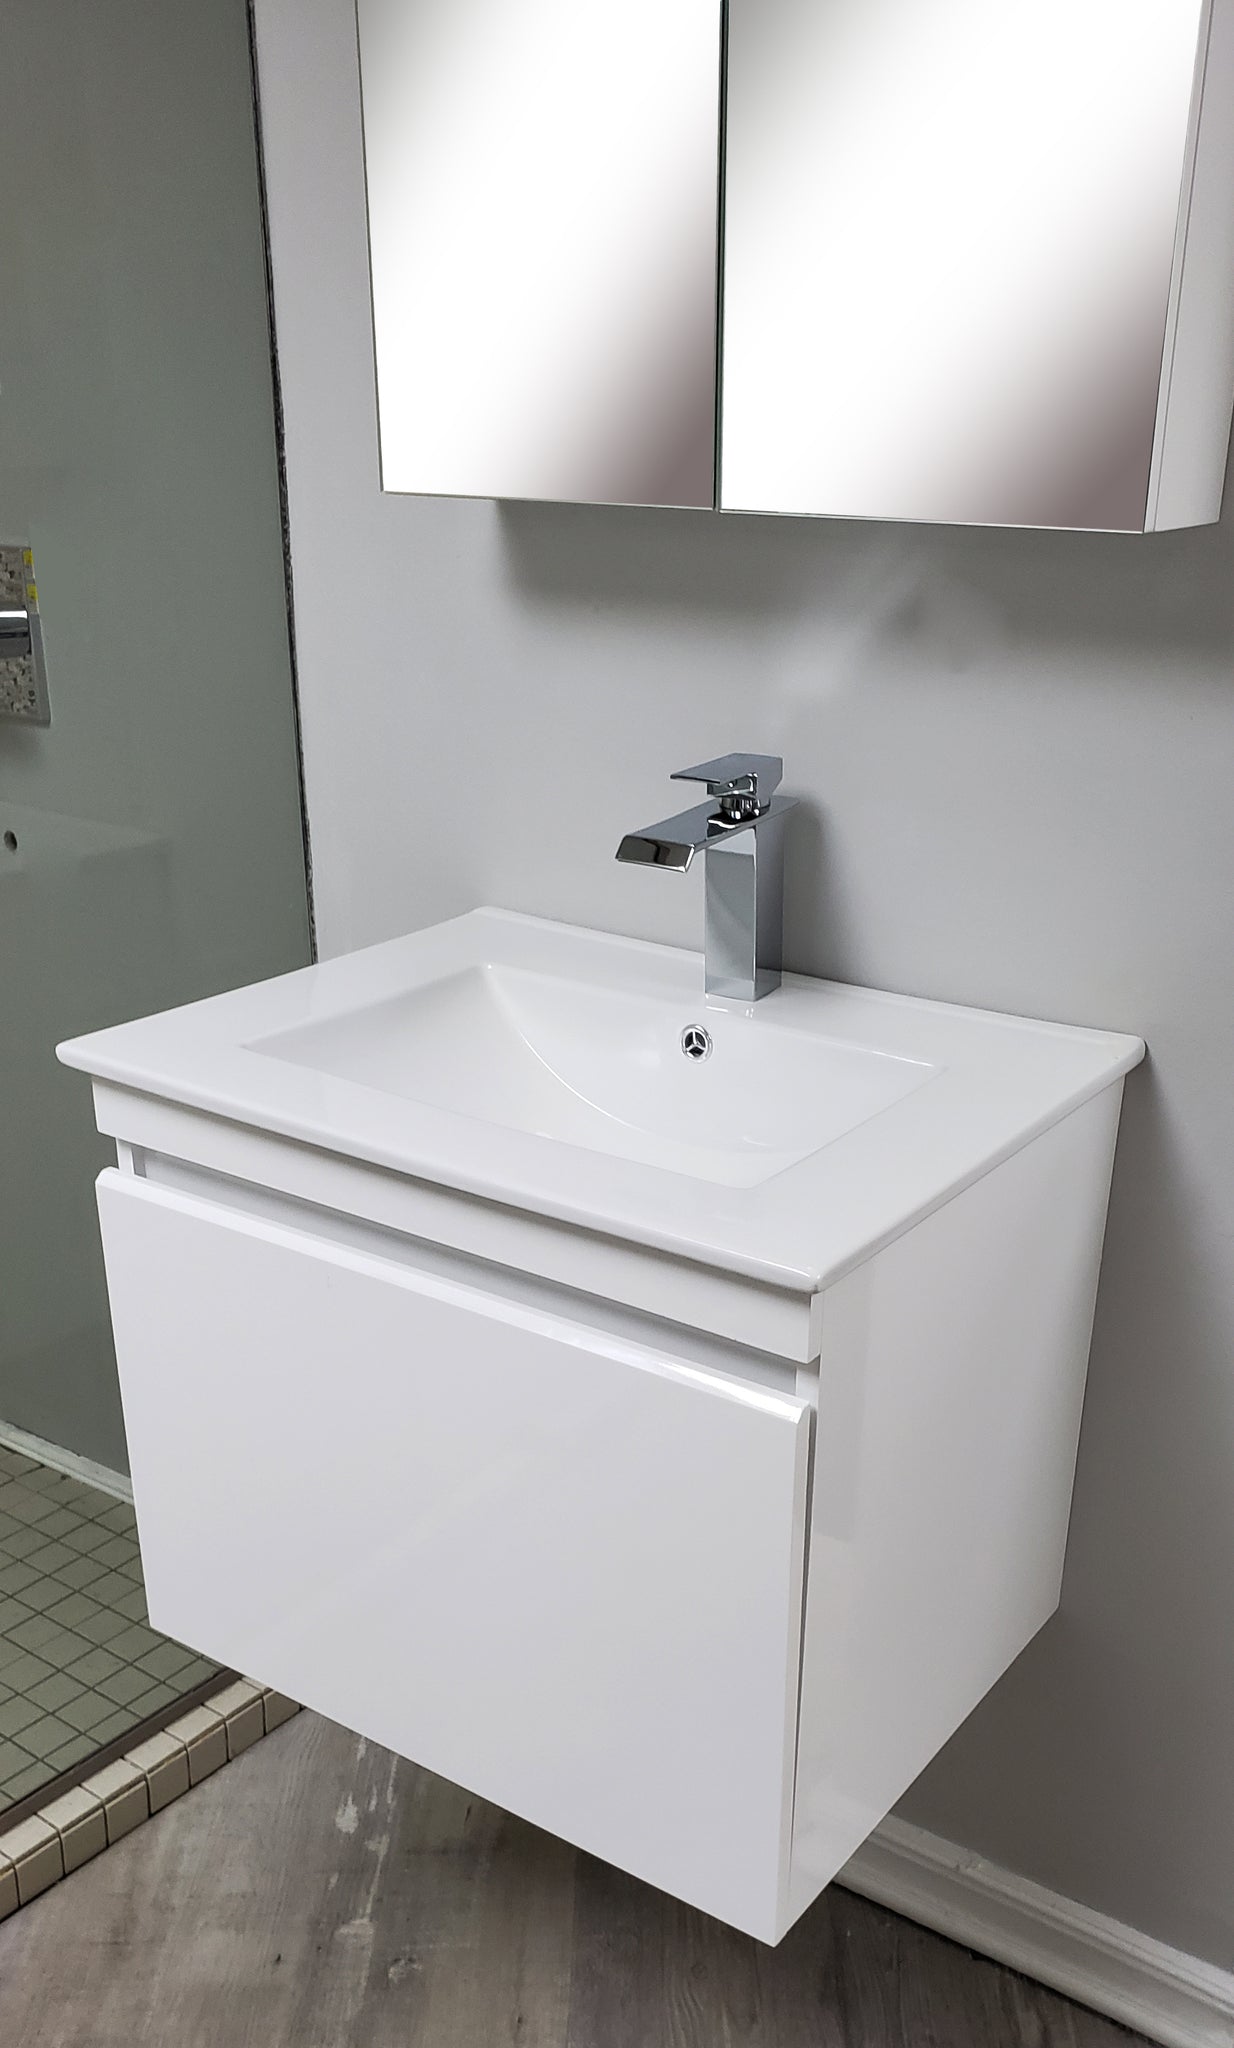  Mueble de baño estrecho de PVC para muebles de baño, 80,340.6  in. : Hogar y Cocina